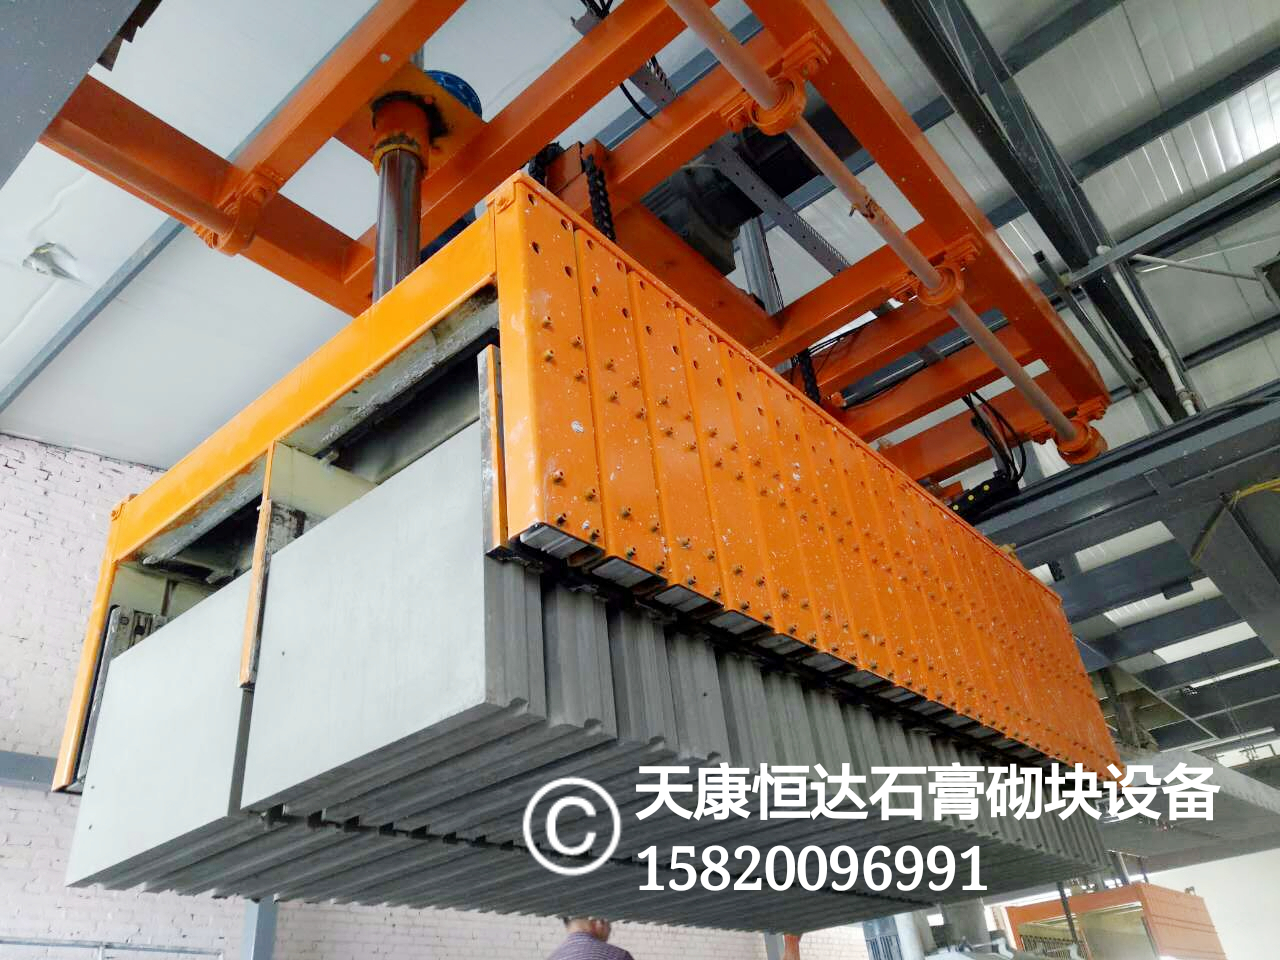 枣庄专业石膏生产机械设备批发